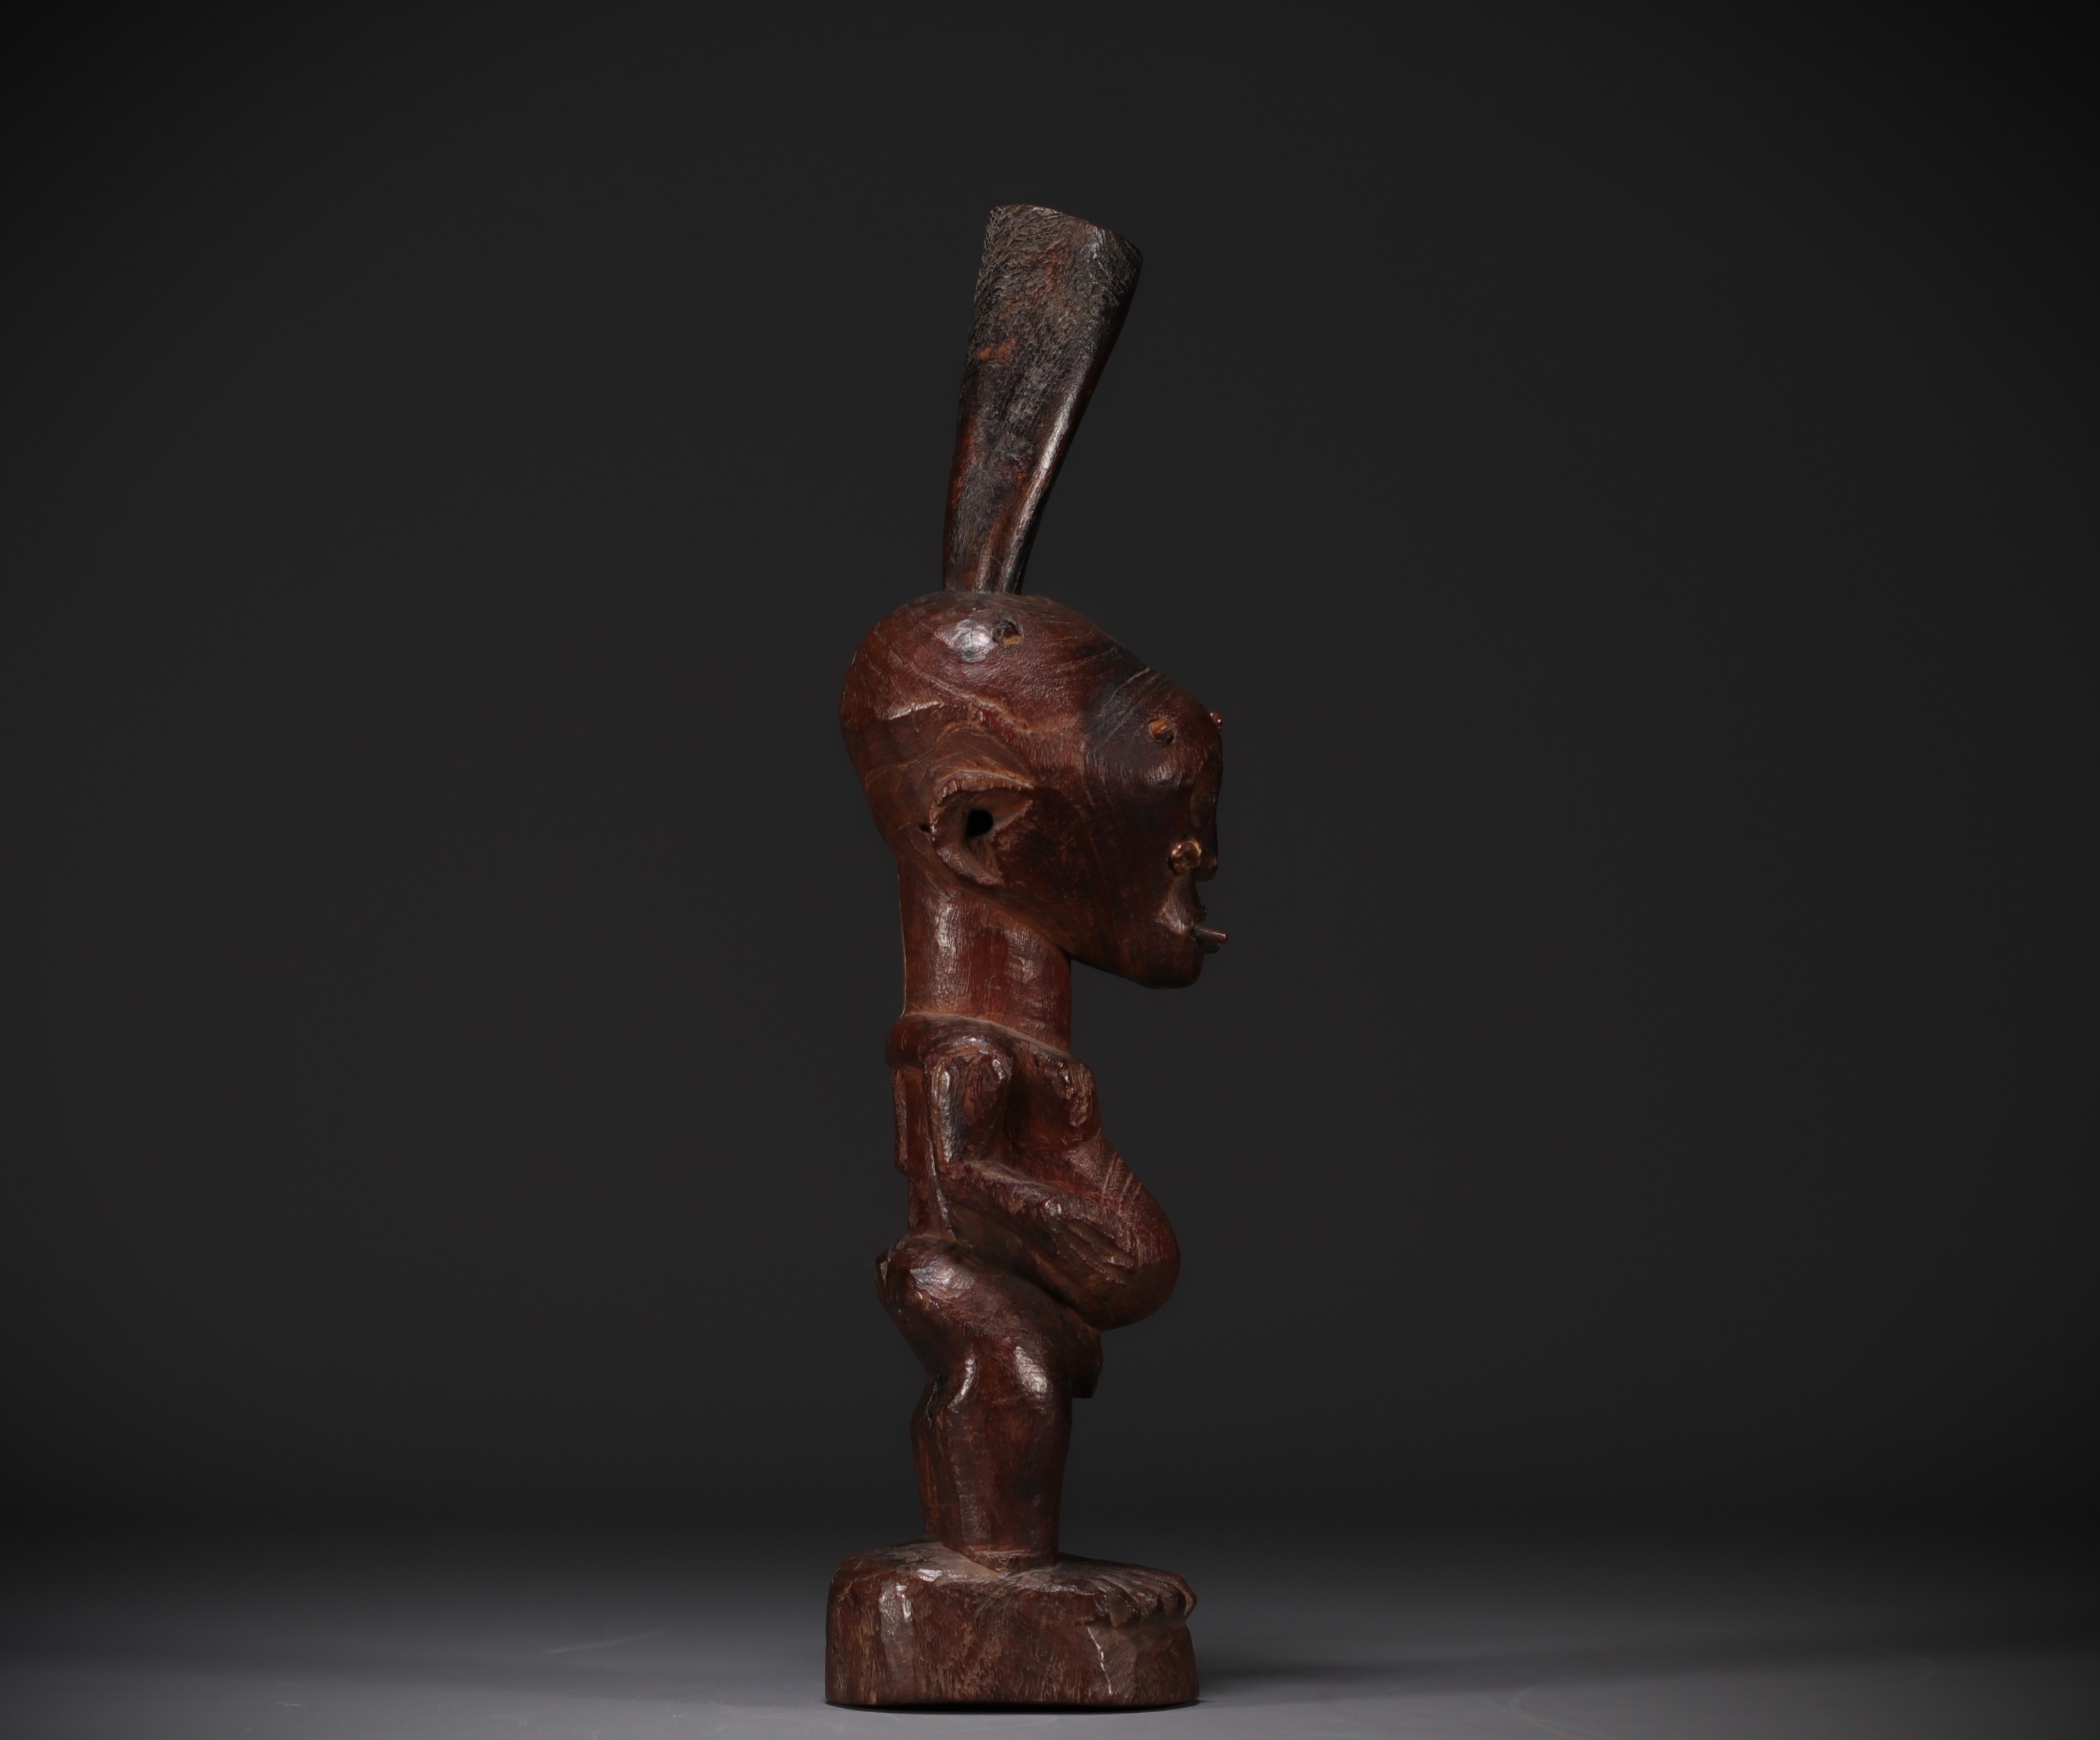 SONGYE figure - Sankuru/Lubefu style collected around 1900 - Rep.Dem.Congo - Image 4 of 8